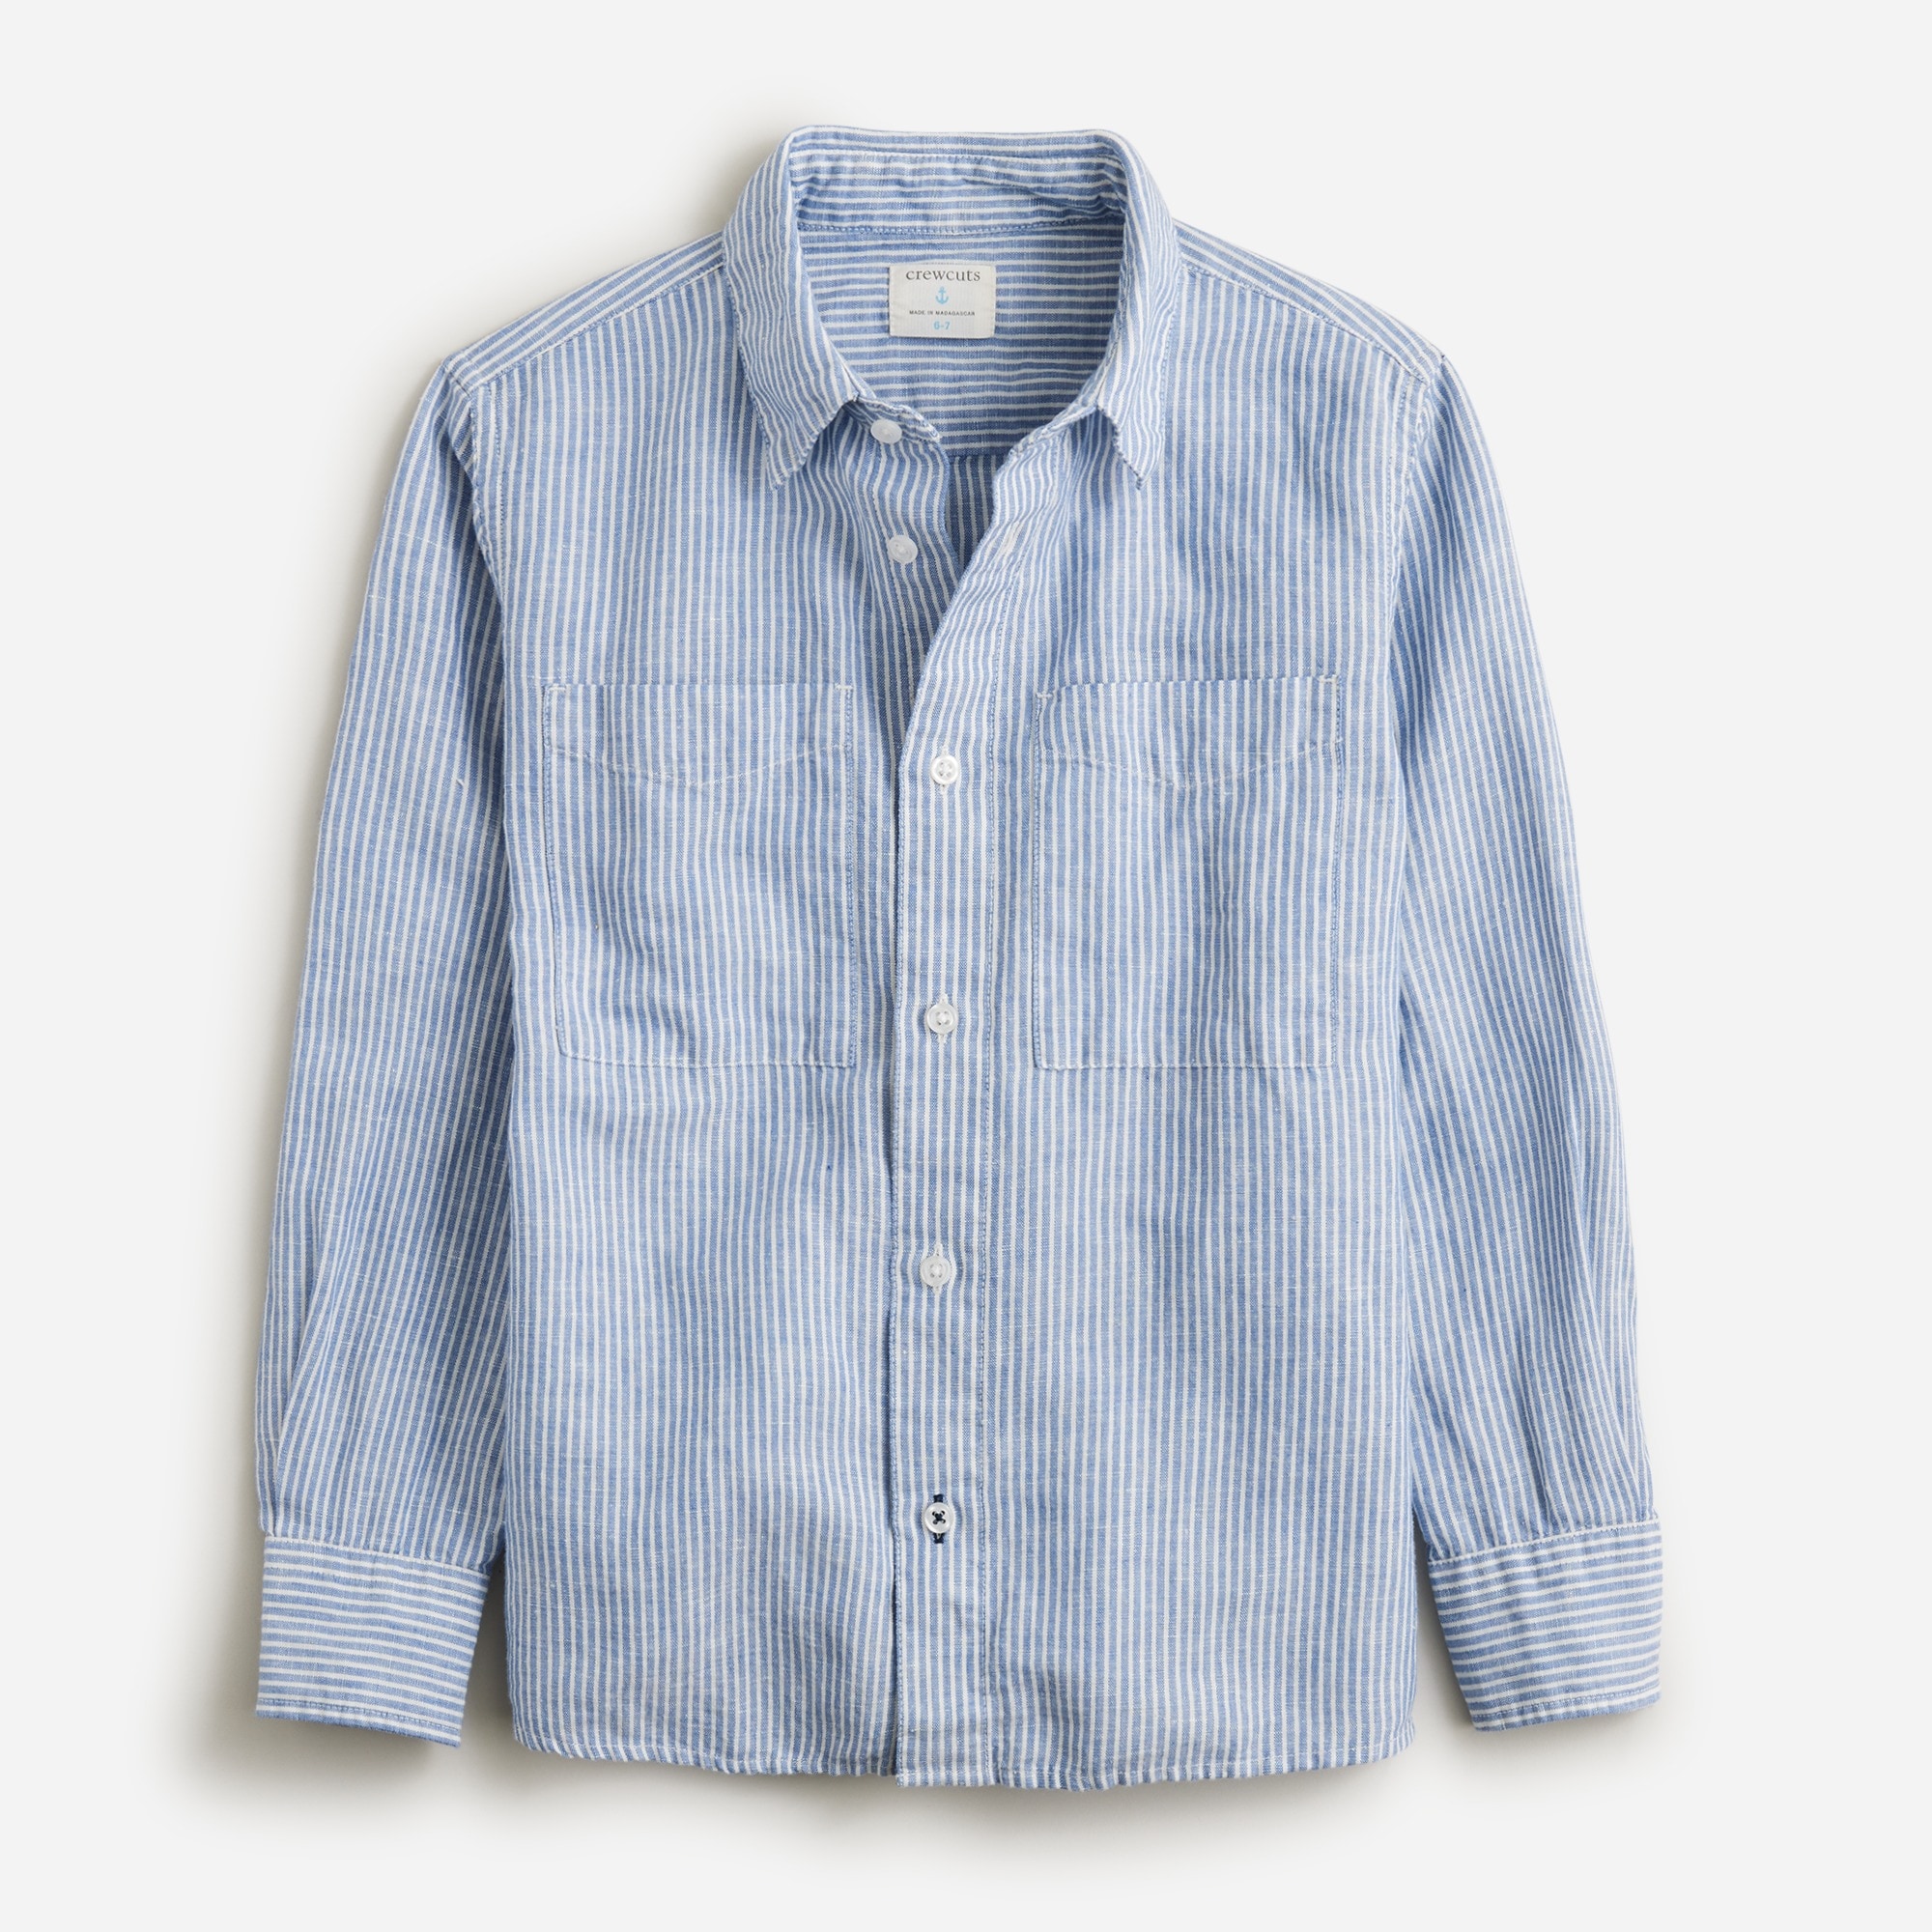  Boys' long-sleeve camp shirt in linen-cotton blend